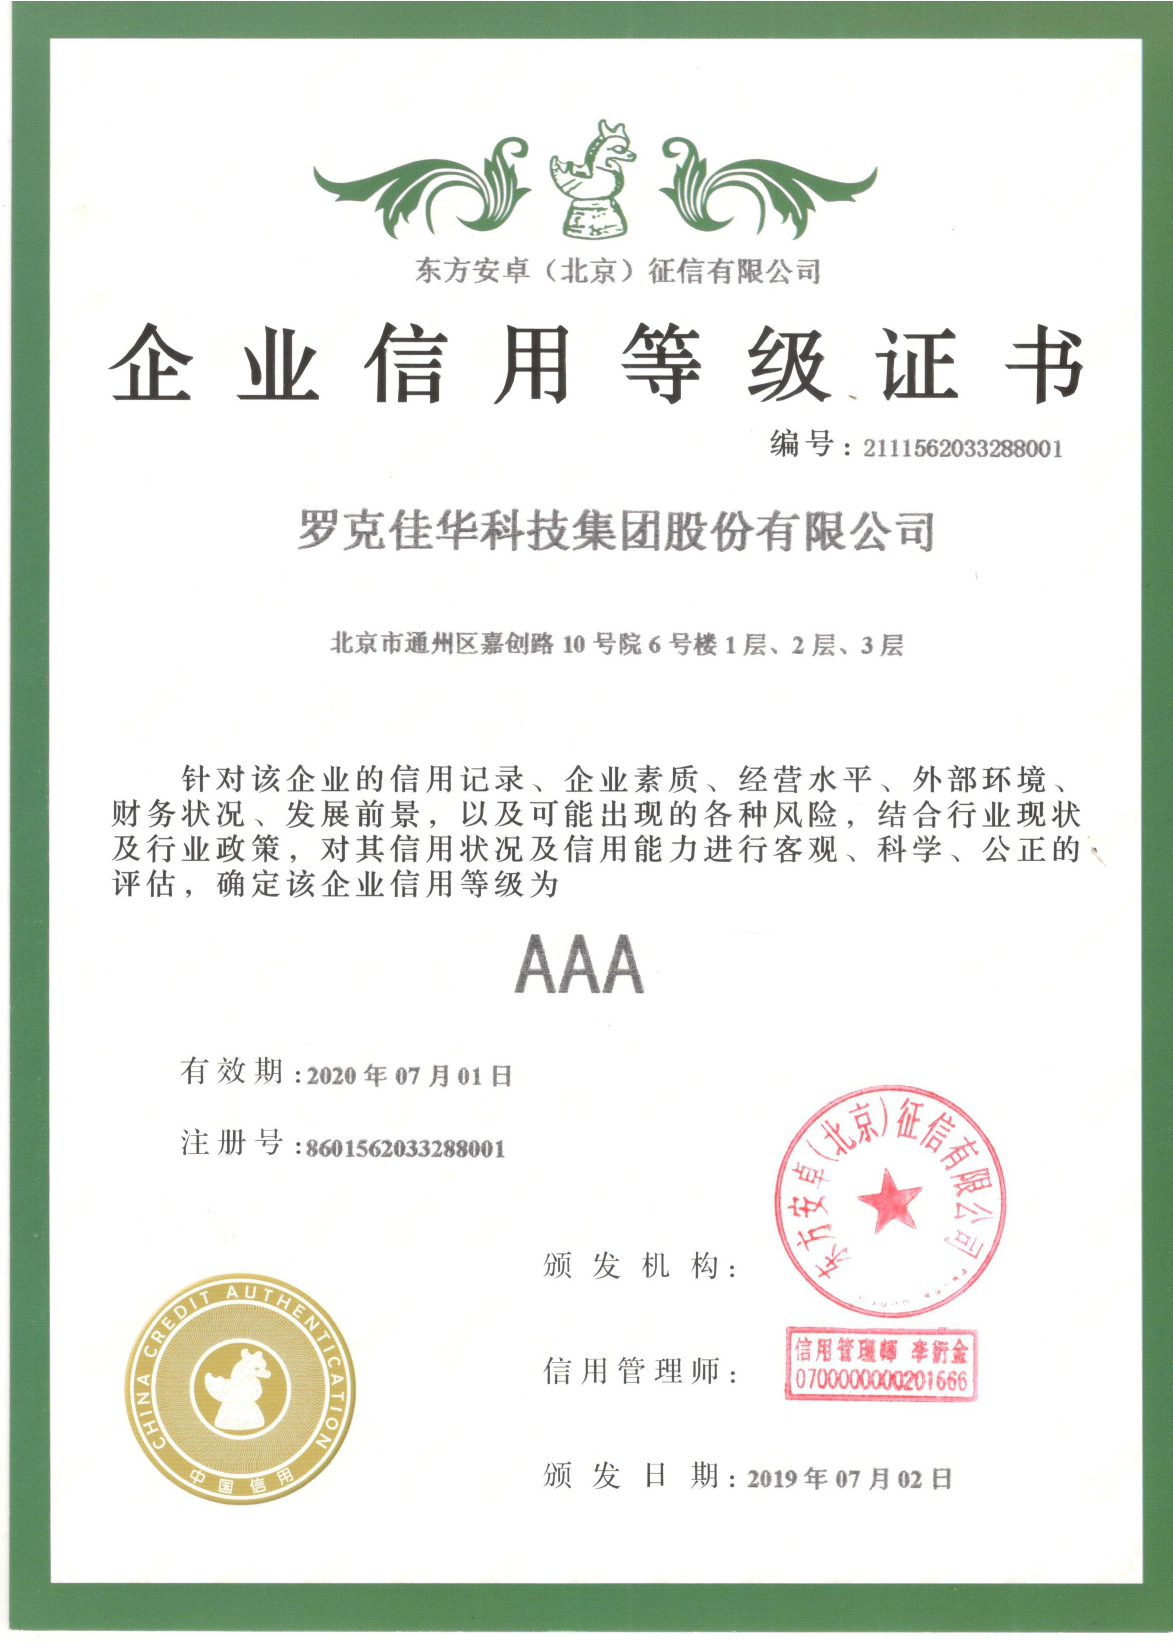 佳华科技荣获“AAA企业信用等级证书”1.png